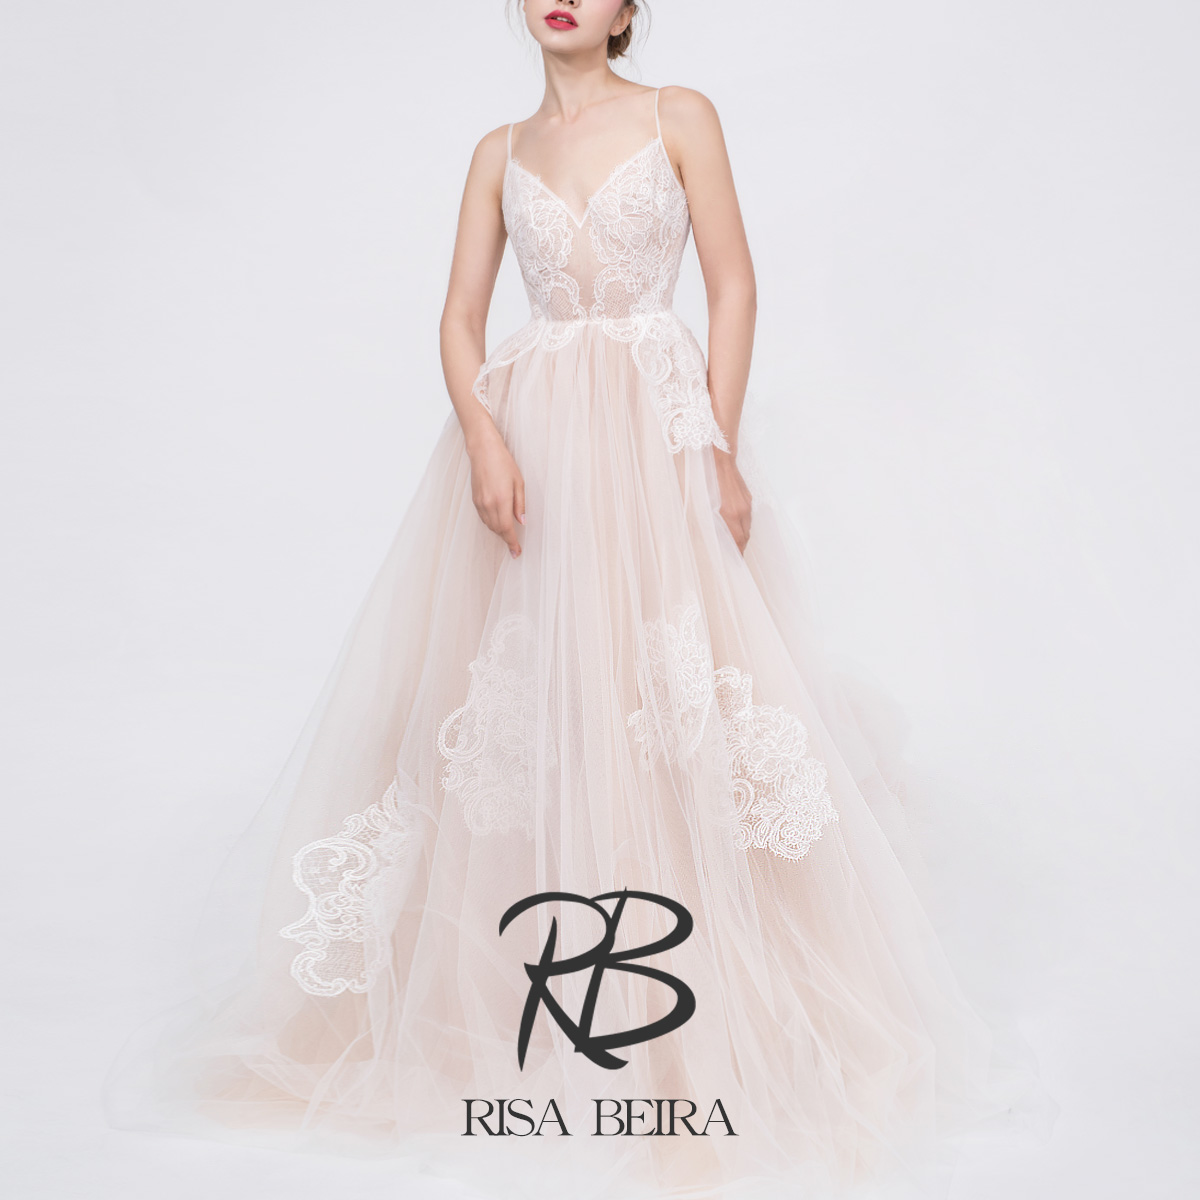 RISA设计师原创《芳菲》时尚人气香槟裸色蕾丝透视吊带小拖尾婚纱